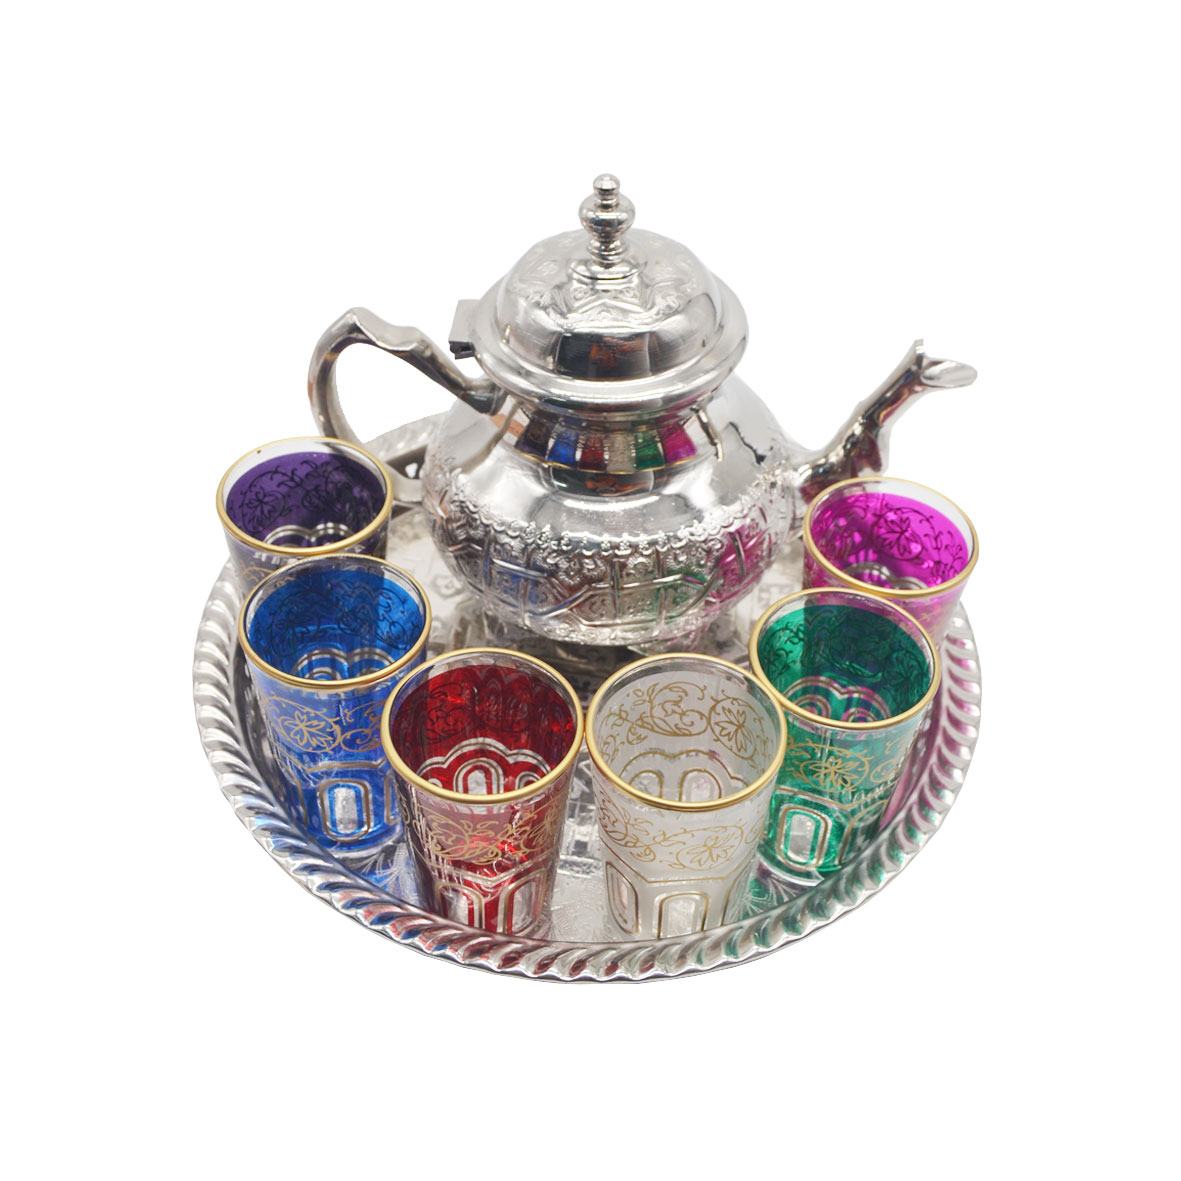 Juegos de Té y vasos: Juego de té marroquí 800 ml bandeja 32 cm con patas